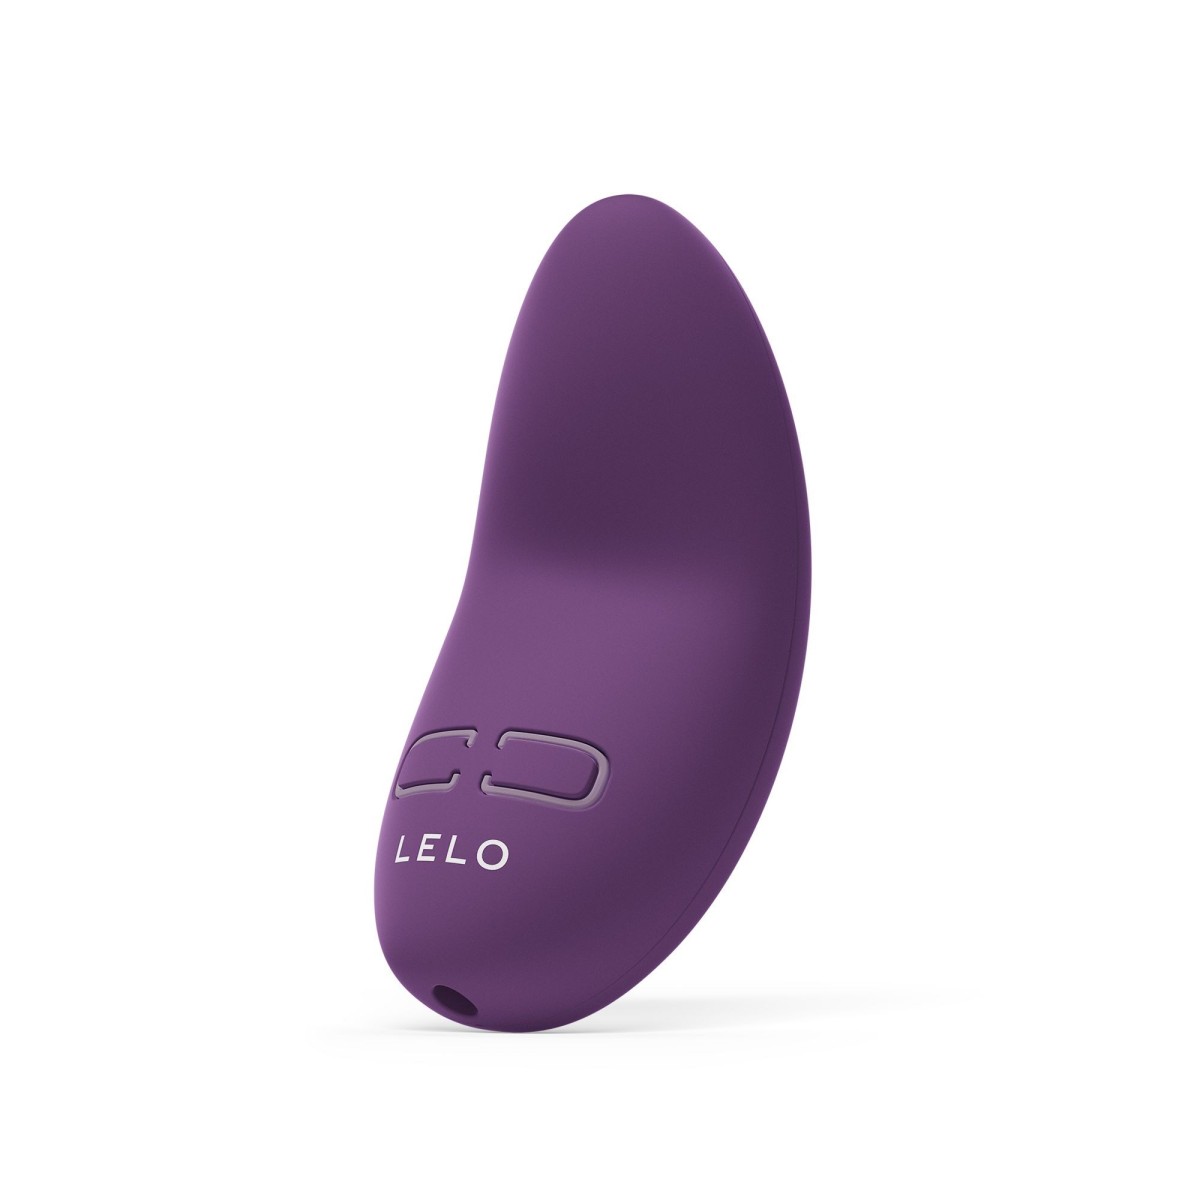 Přikládací vibrátor LELO Lily 3 Dark Plum, luxusní mini vibrátor na klitoris